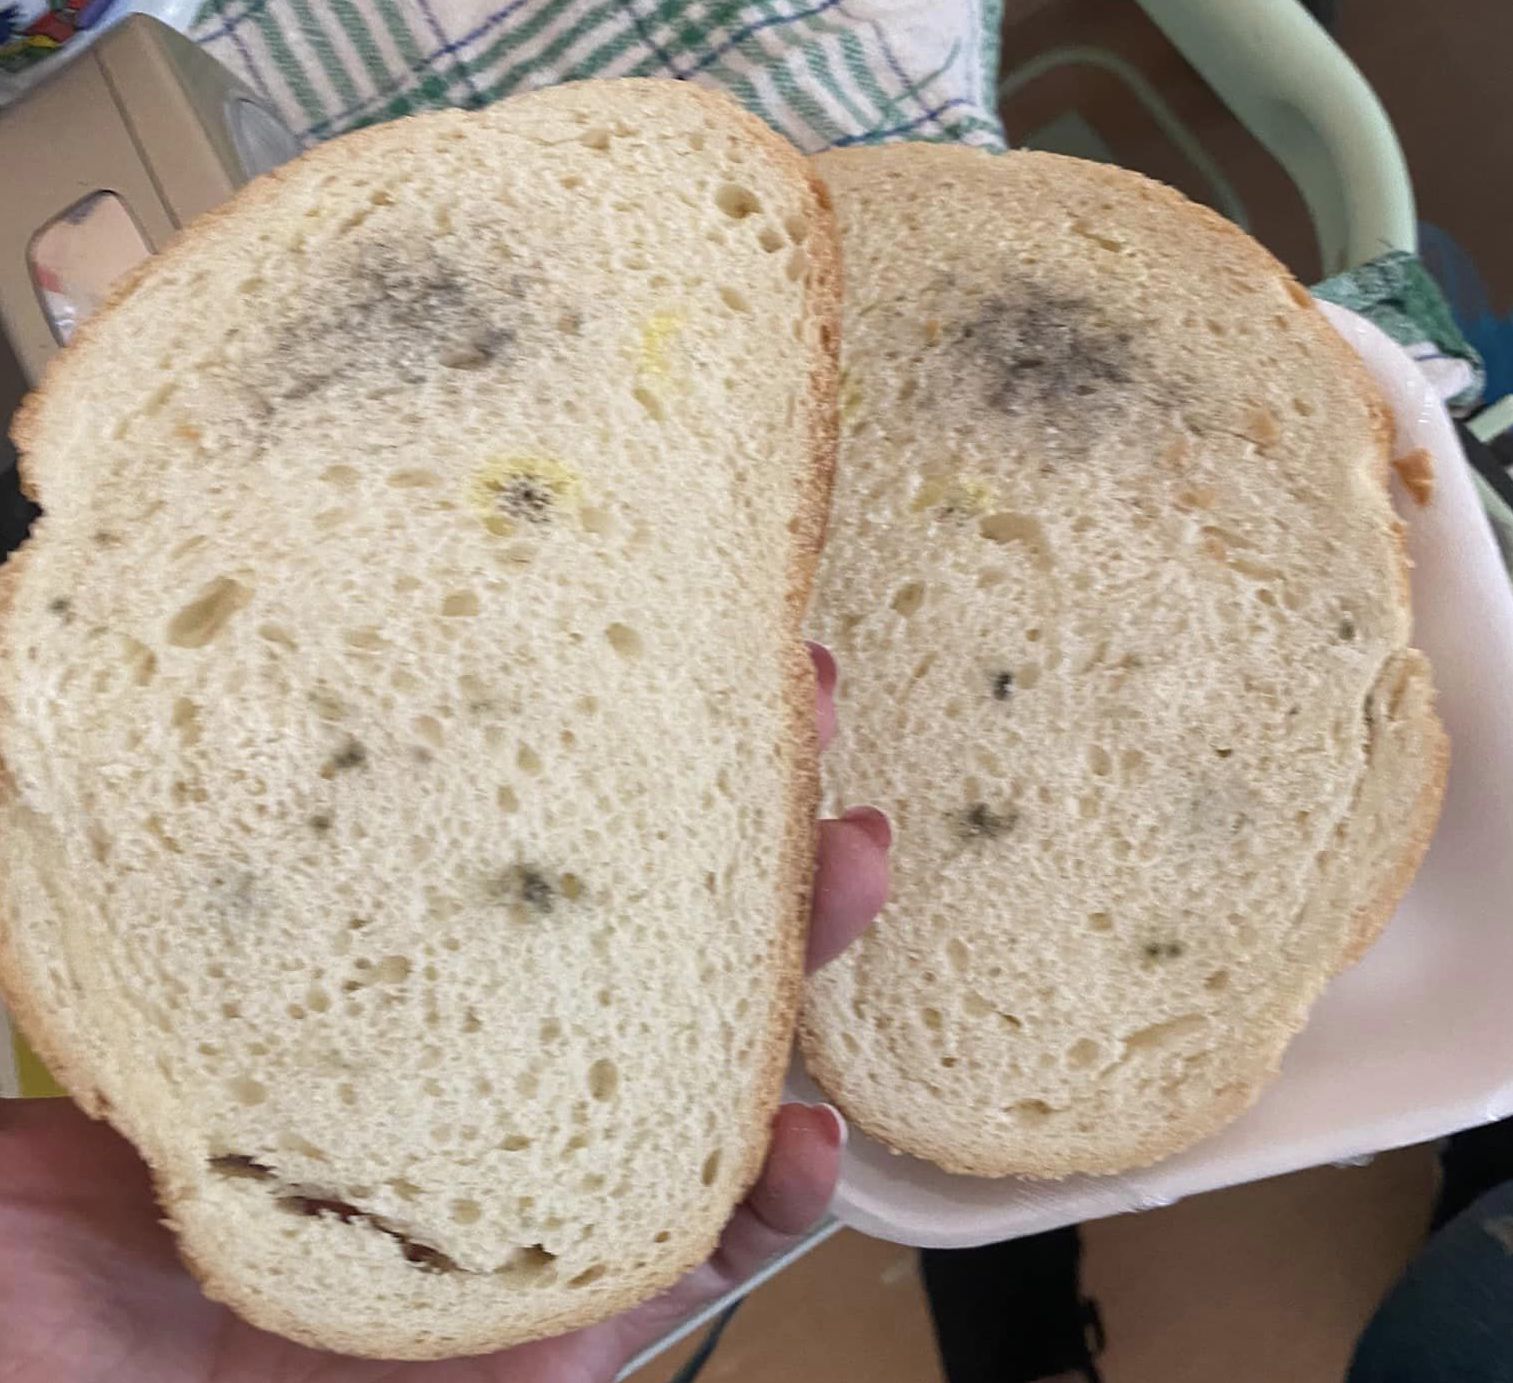 Penészes kenyér, romlott felvágott a Szent János Kórház gasztroenterológiai osztályán